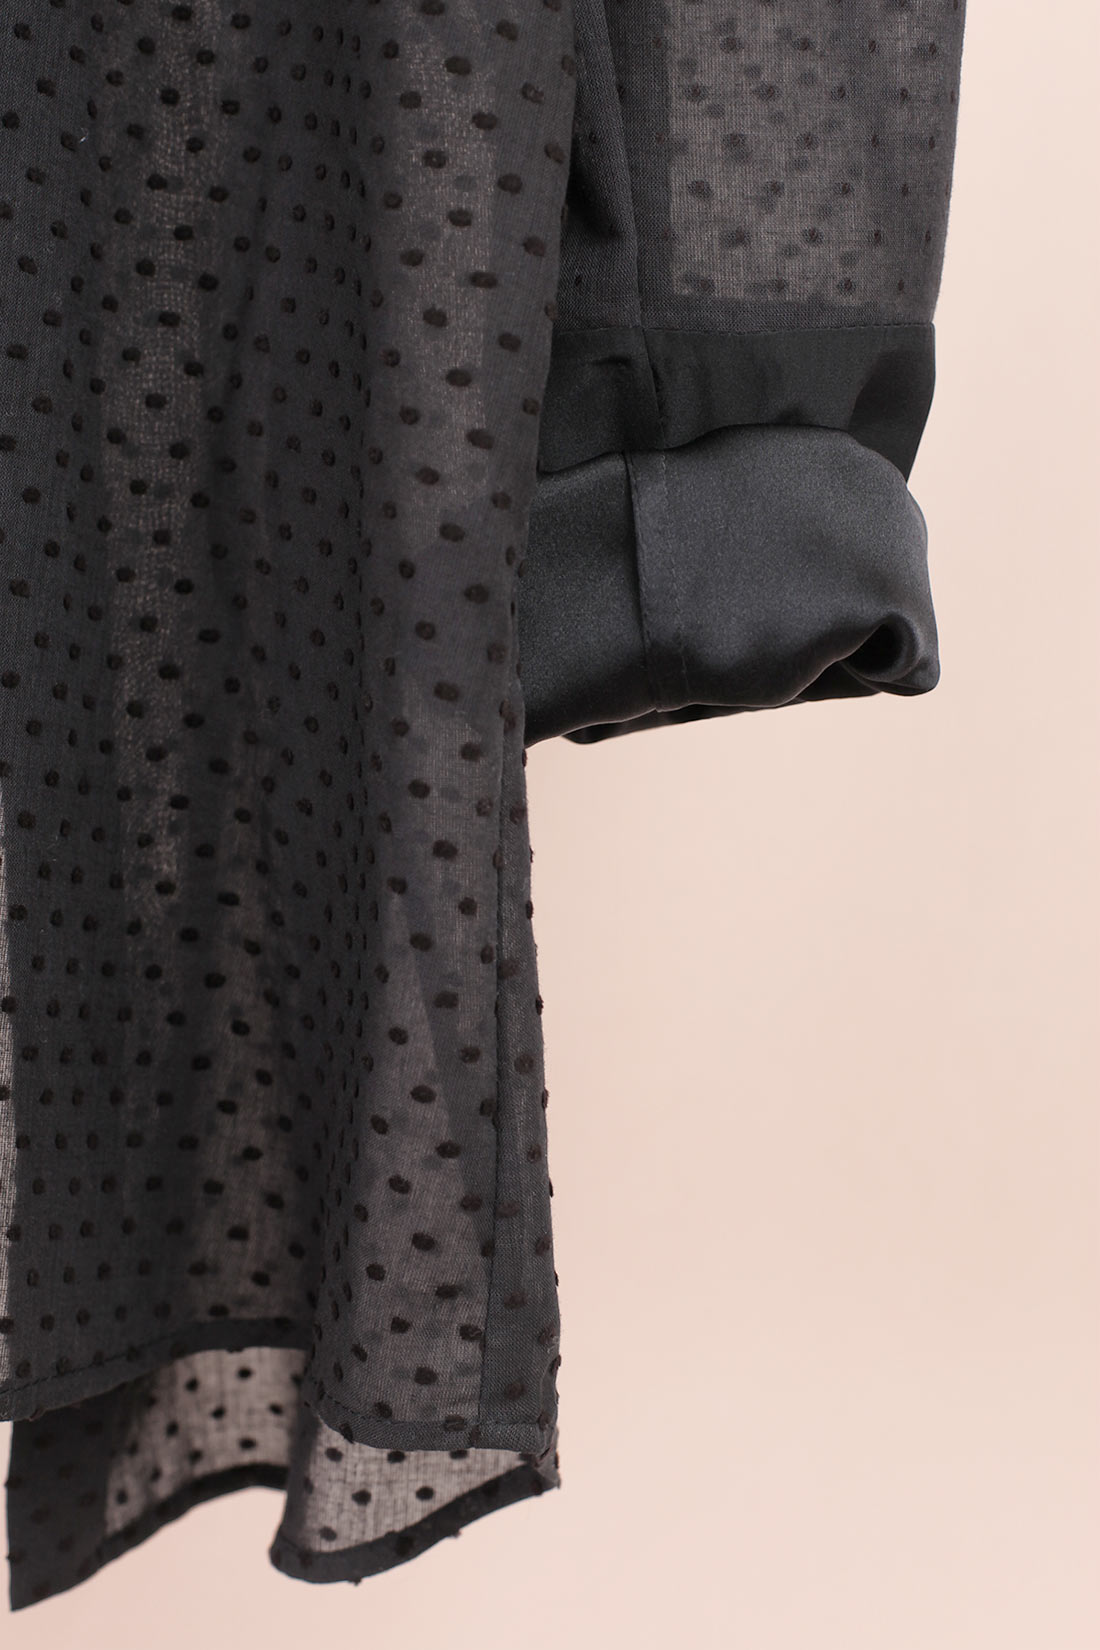 paupaula-immich-bluse-aus-semi-transparenter-schweizer-baumwolle-mit-eingewebten-punktenla-immich-Bluse aus semi-transparenter Schweizer Baumwolle mit eingewebten Punkten